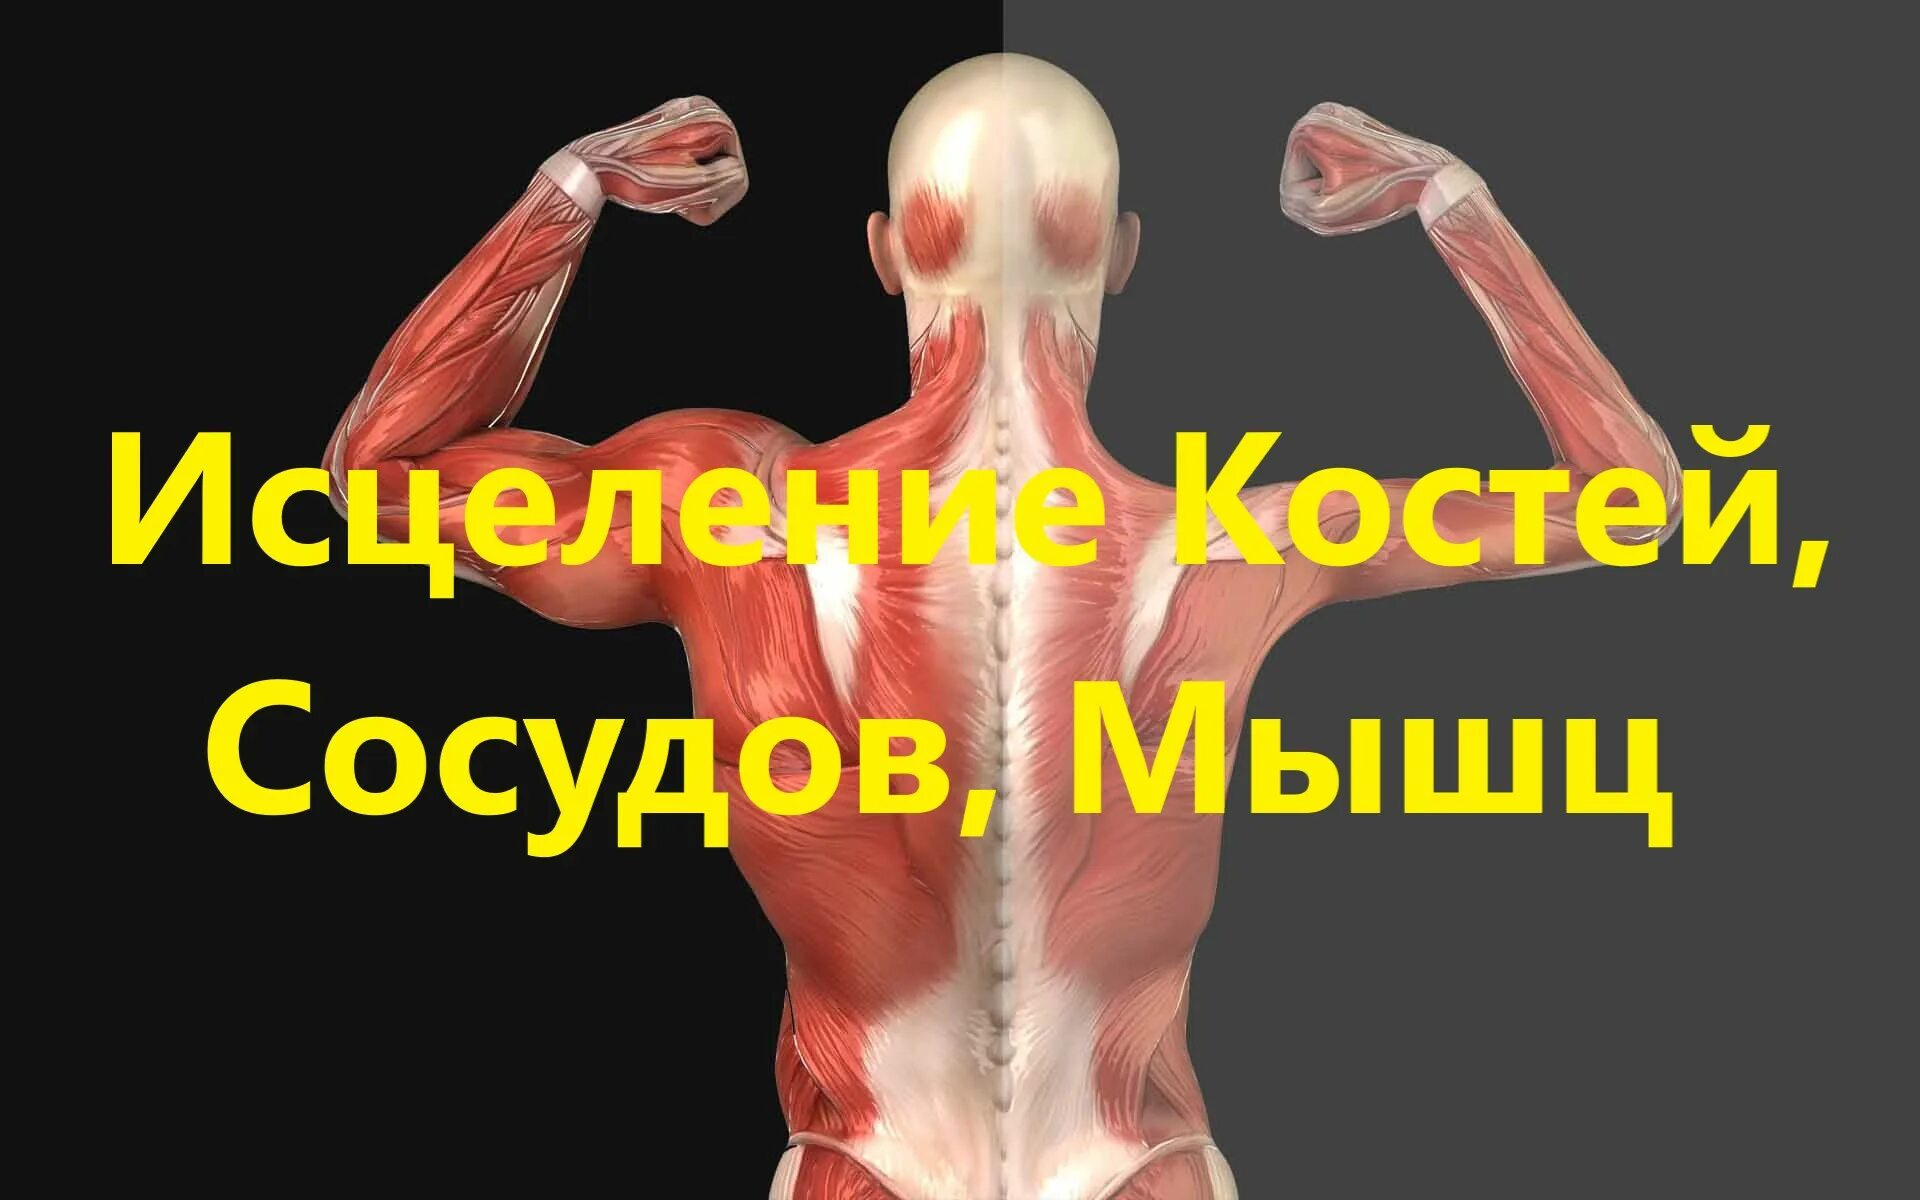 Гаряев матрица исцеления мышц, костей, сосудов. Матрица Гаряева исцеление костей сосудов мышц. Матрица Гаряева кости мышцы сосуды. Настоящая матрица Гаряева коррекция костно мышечной системы.